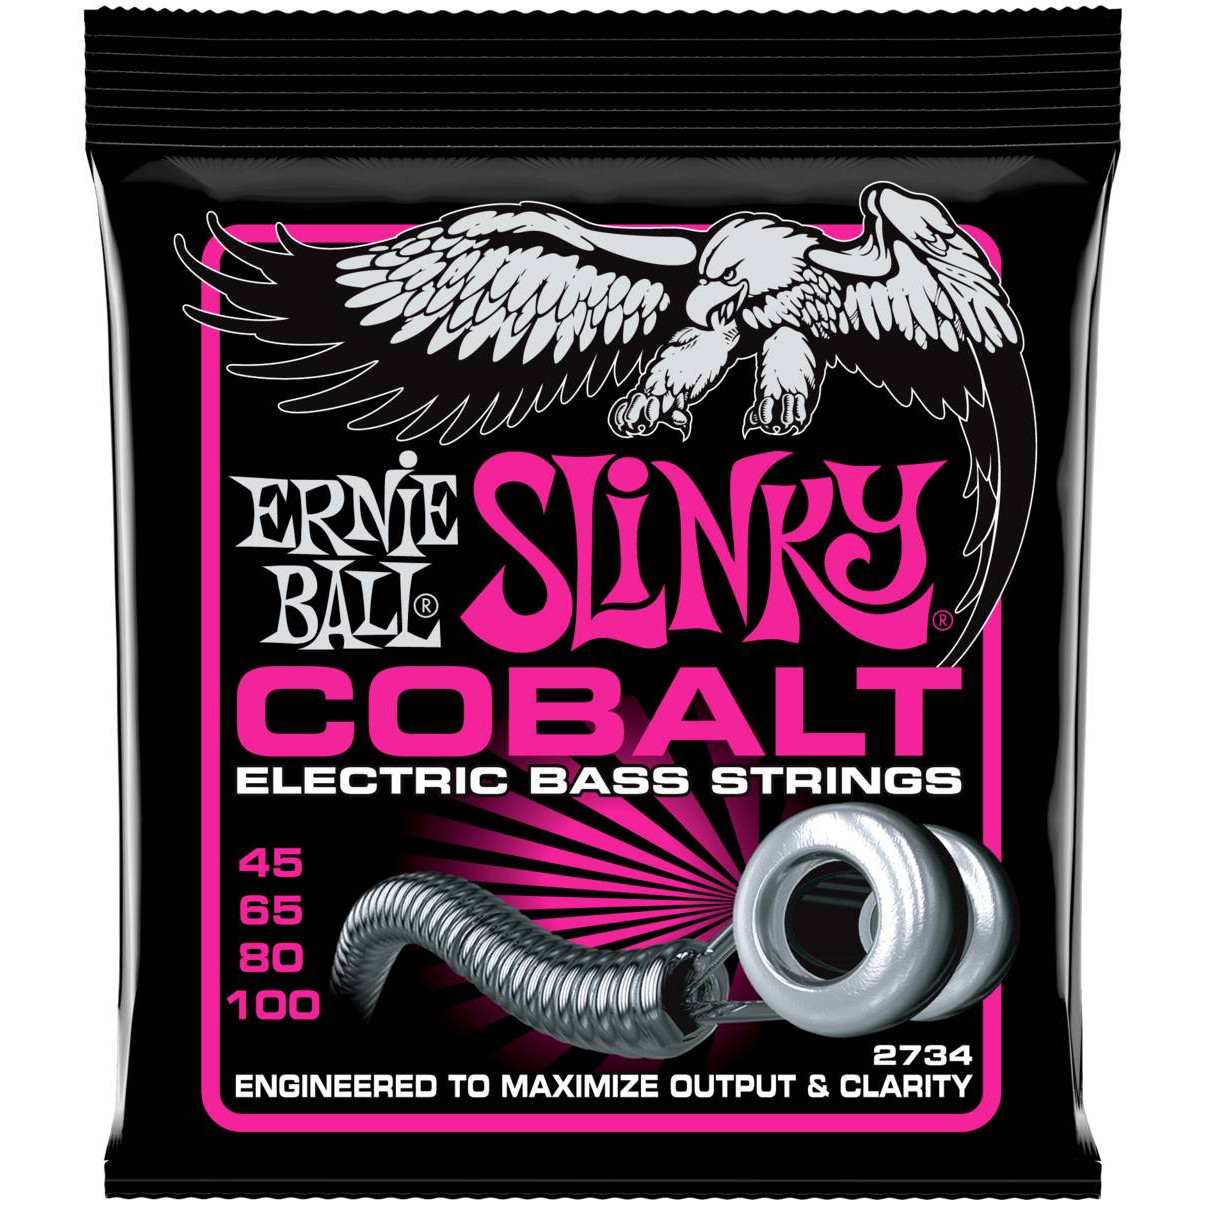 Струны Ernie Ball 2734 Slinky Cobalt Super Bass струны ernie ball 2070 earthwood acoustic bass